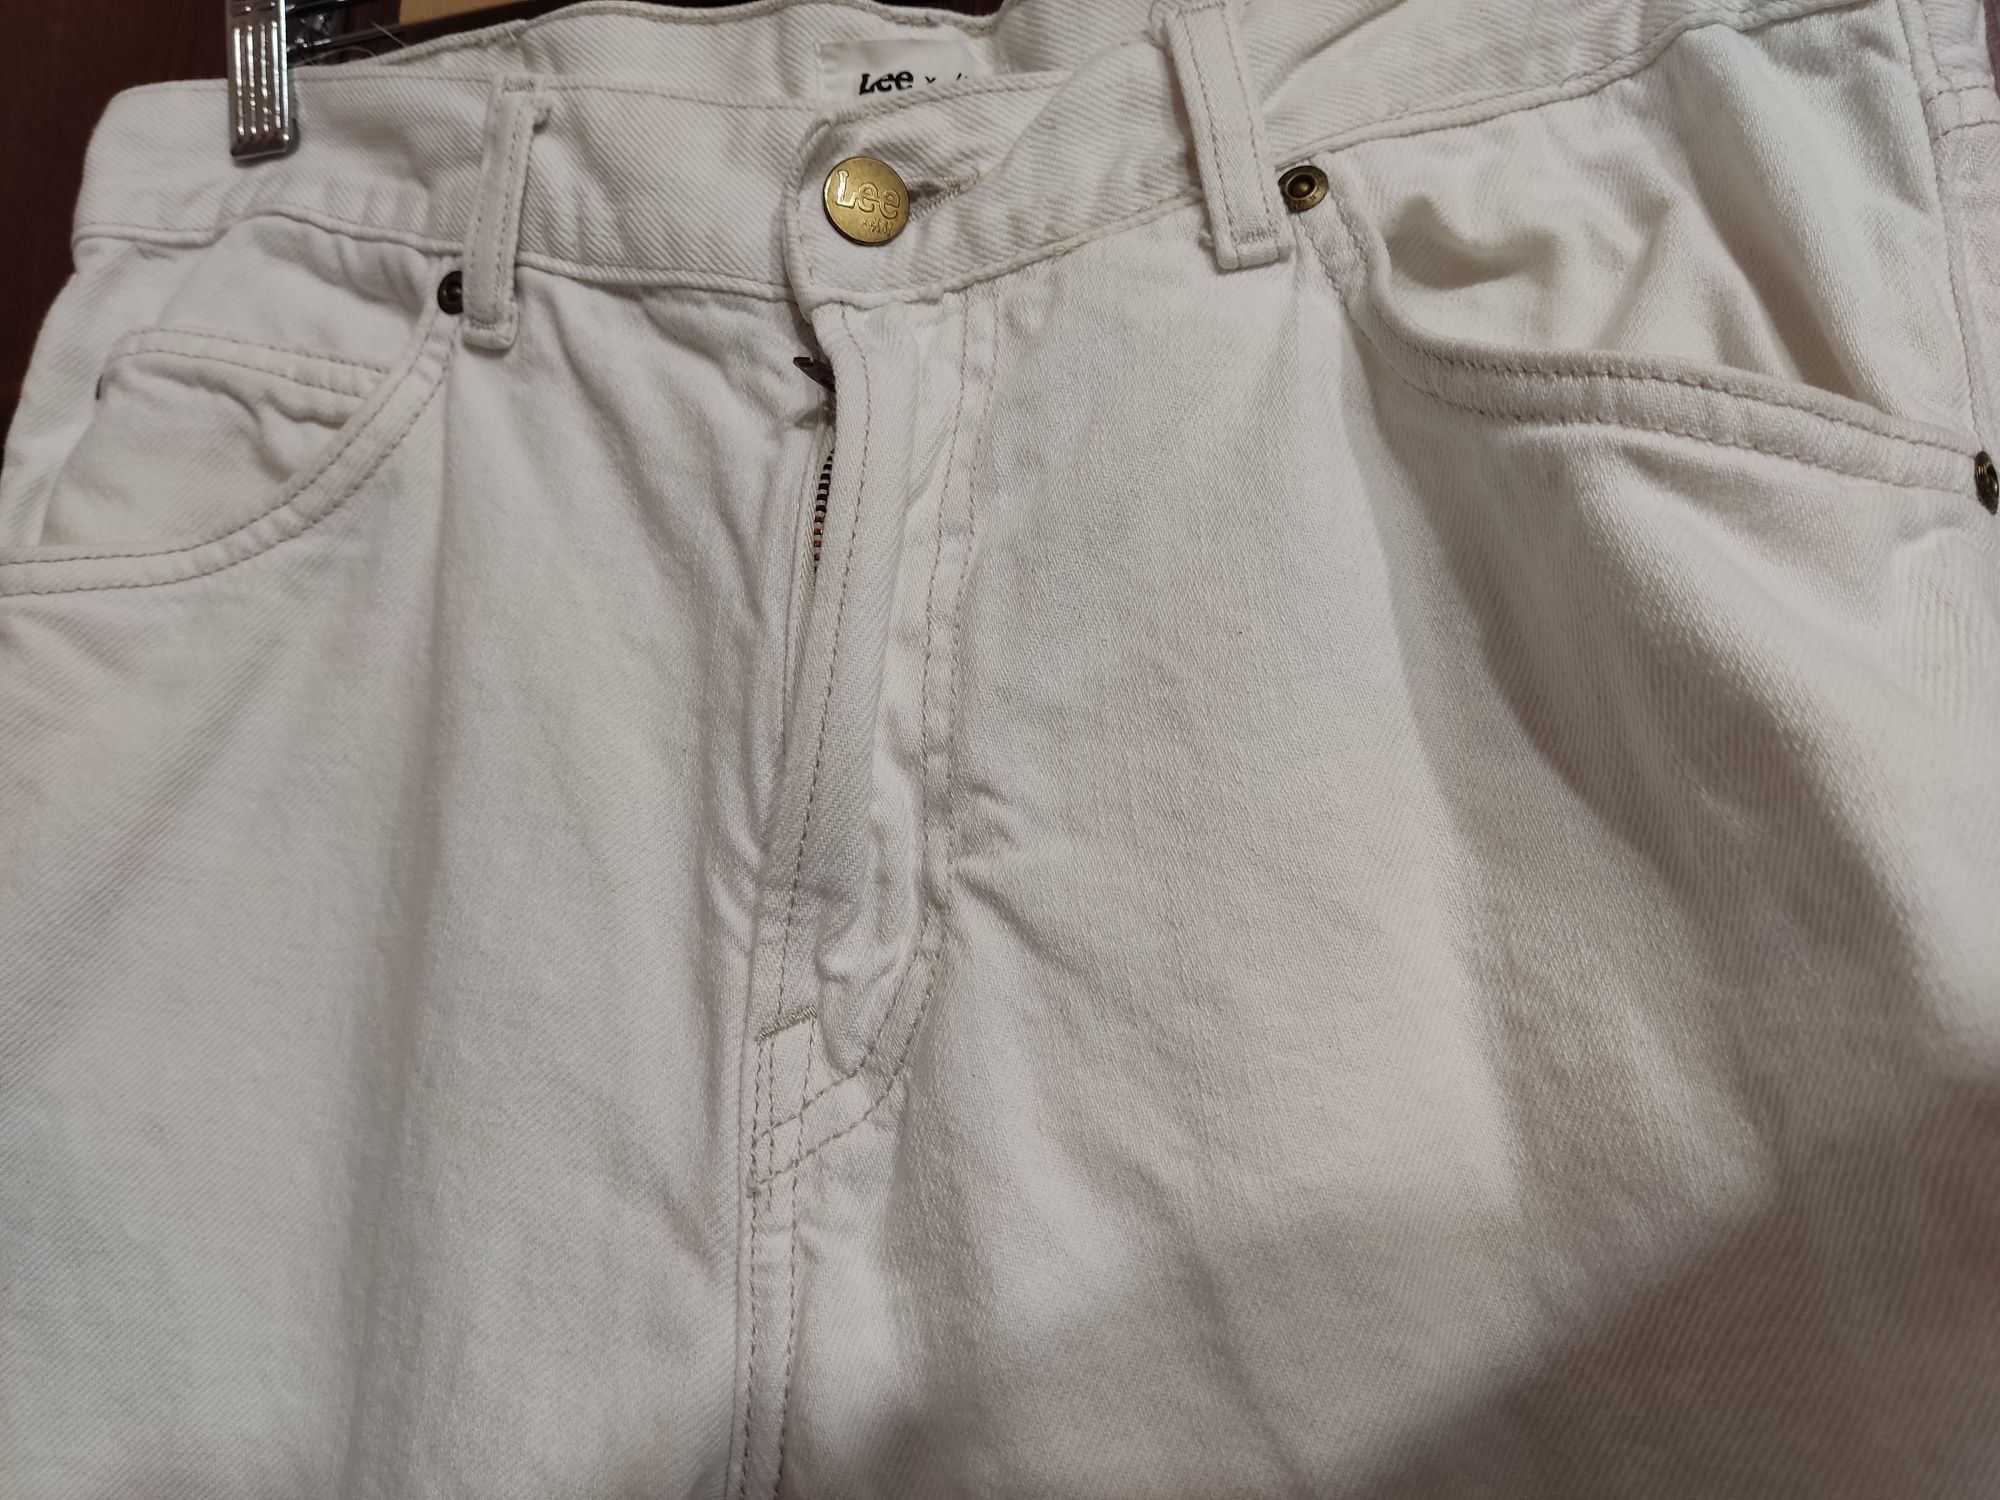 Spodnie białe męskie chłopięce LEE bdb w33 l32